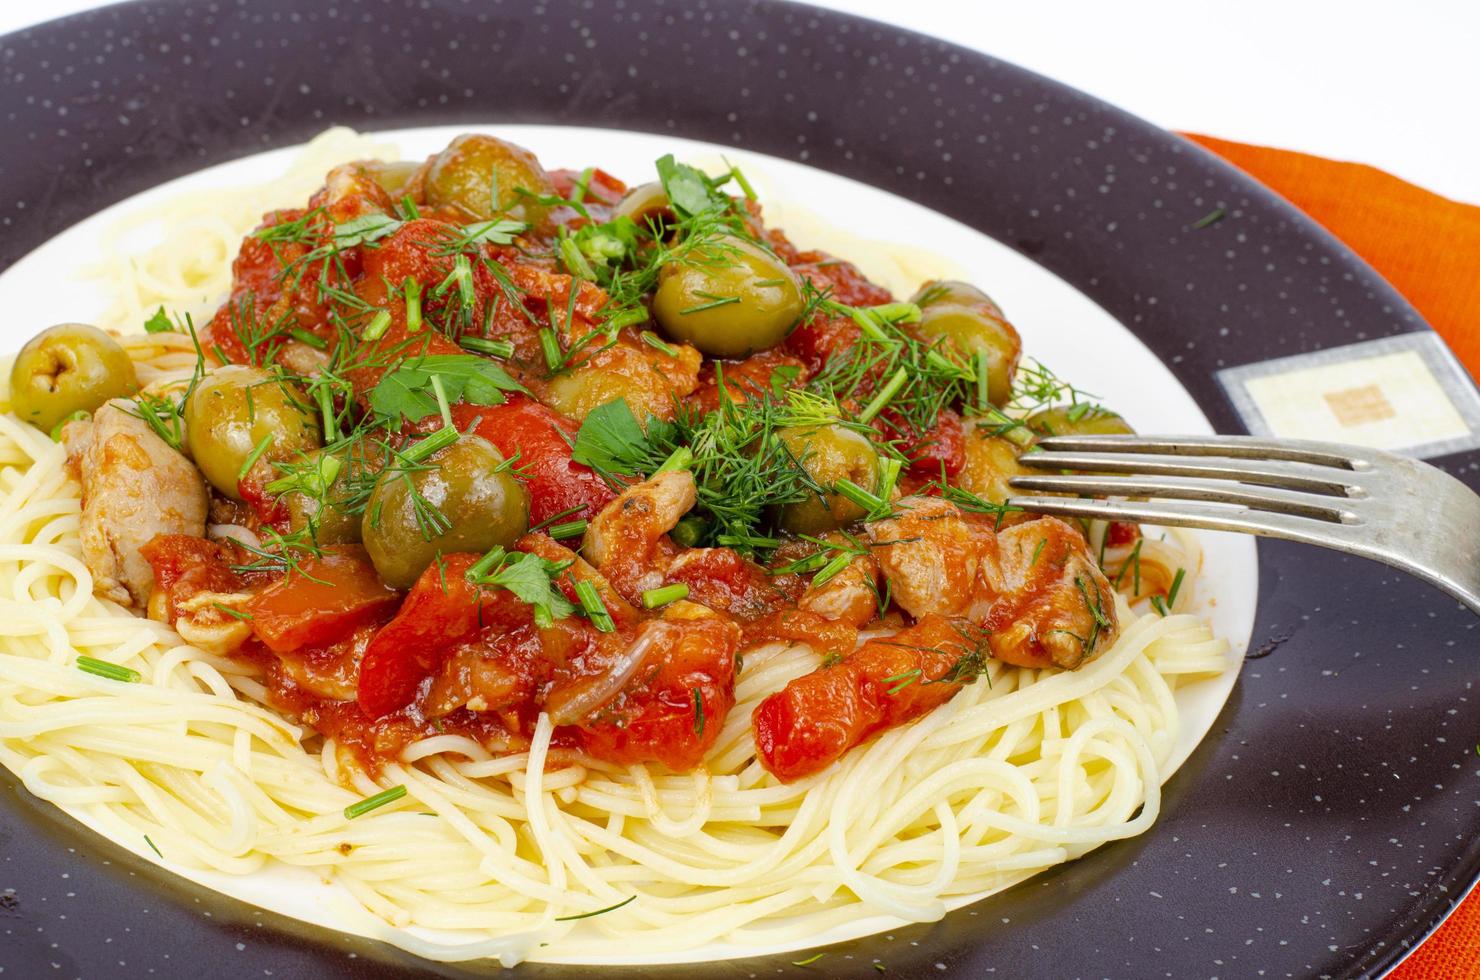 spaghetti con verdure stufate e olive verdi. foto in studio